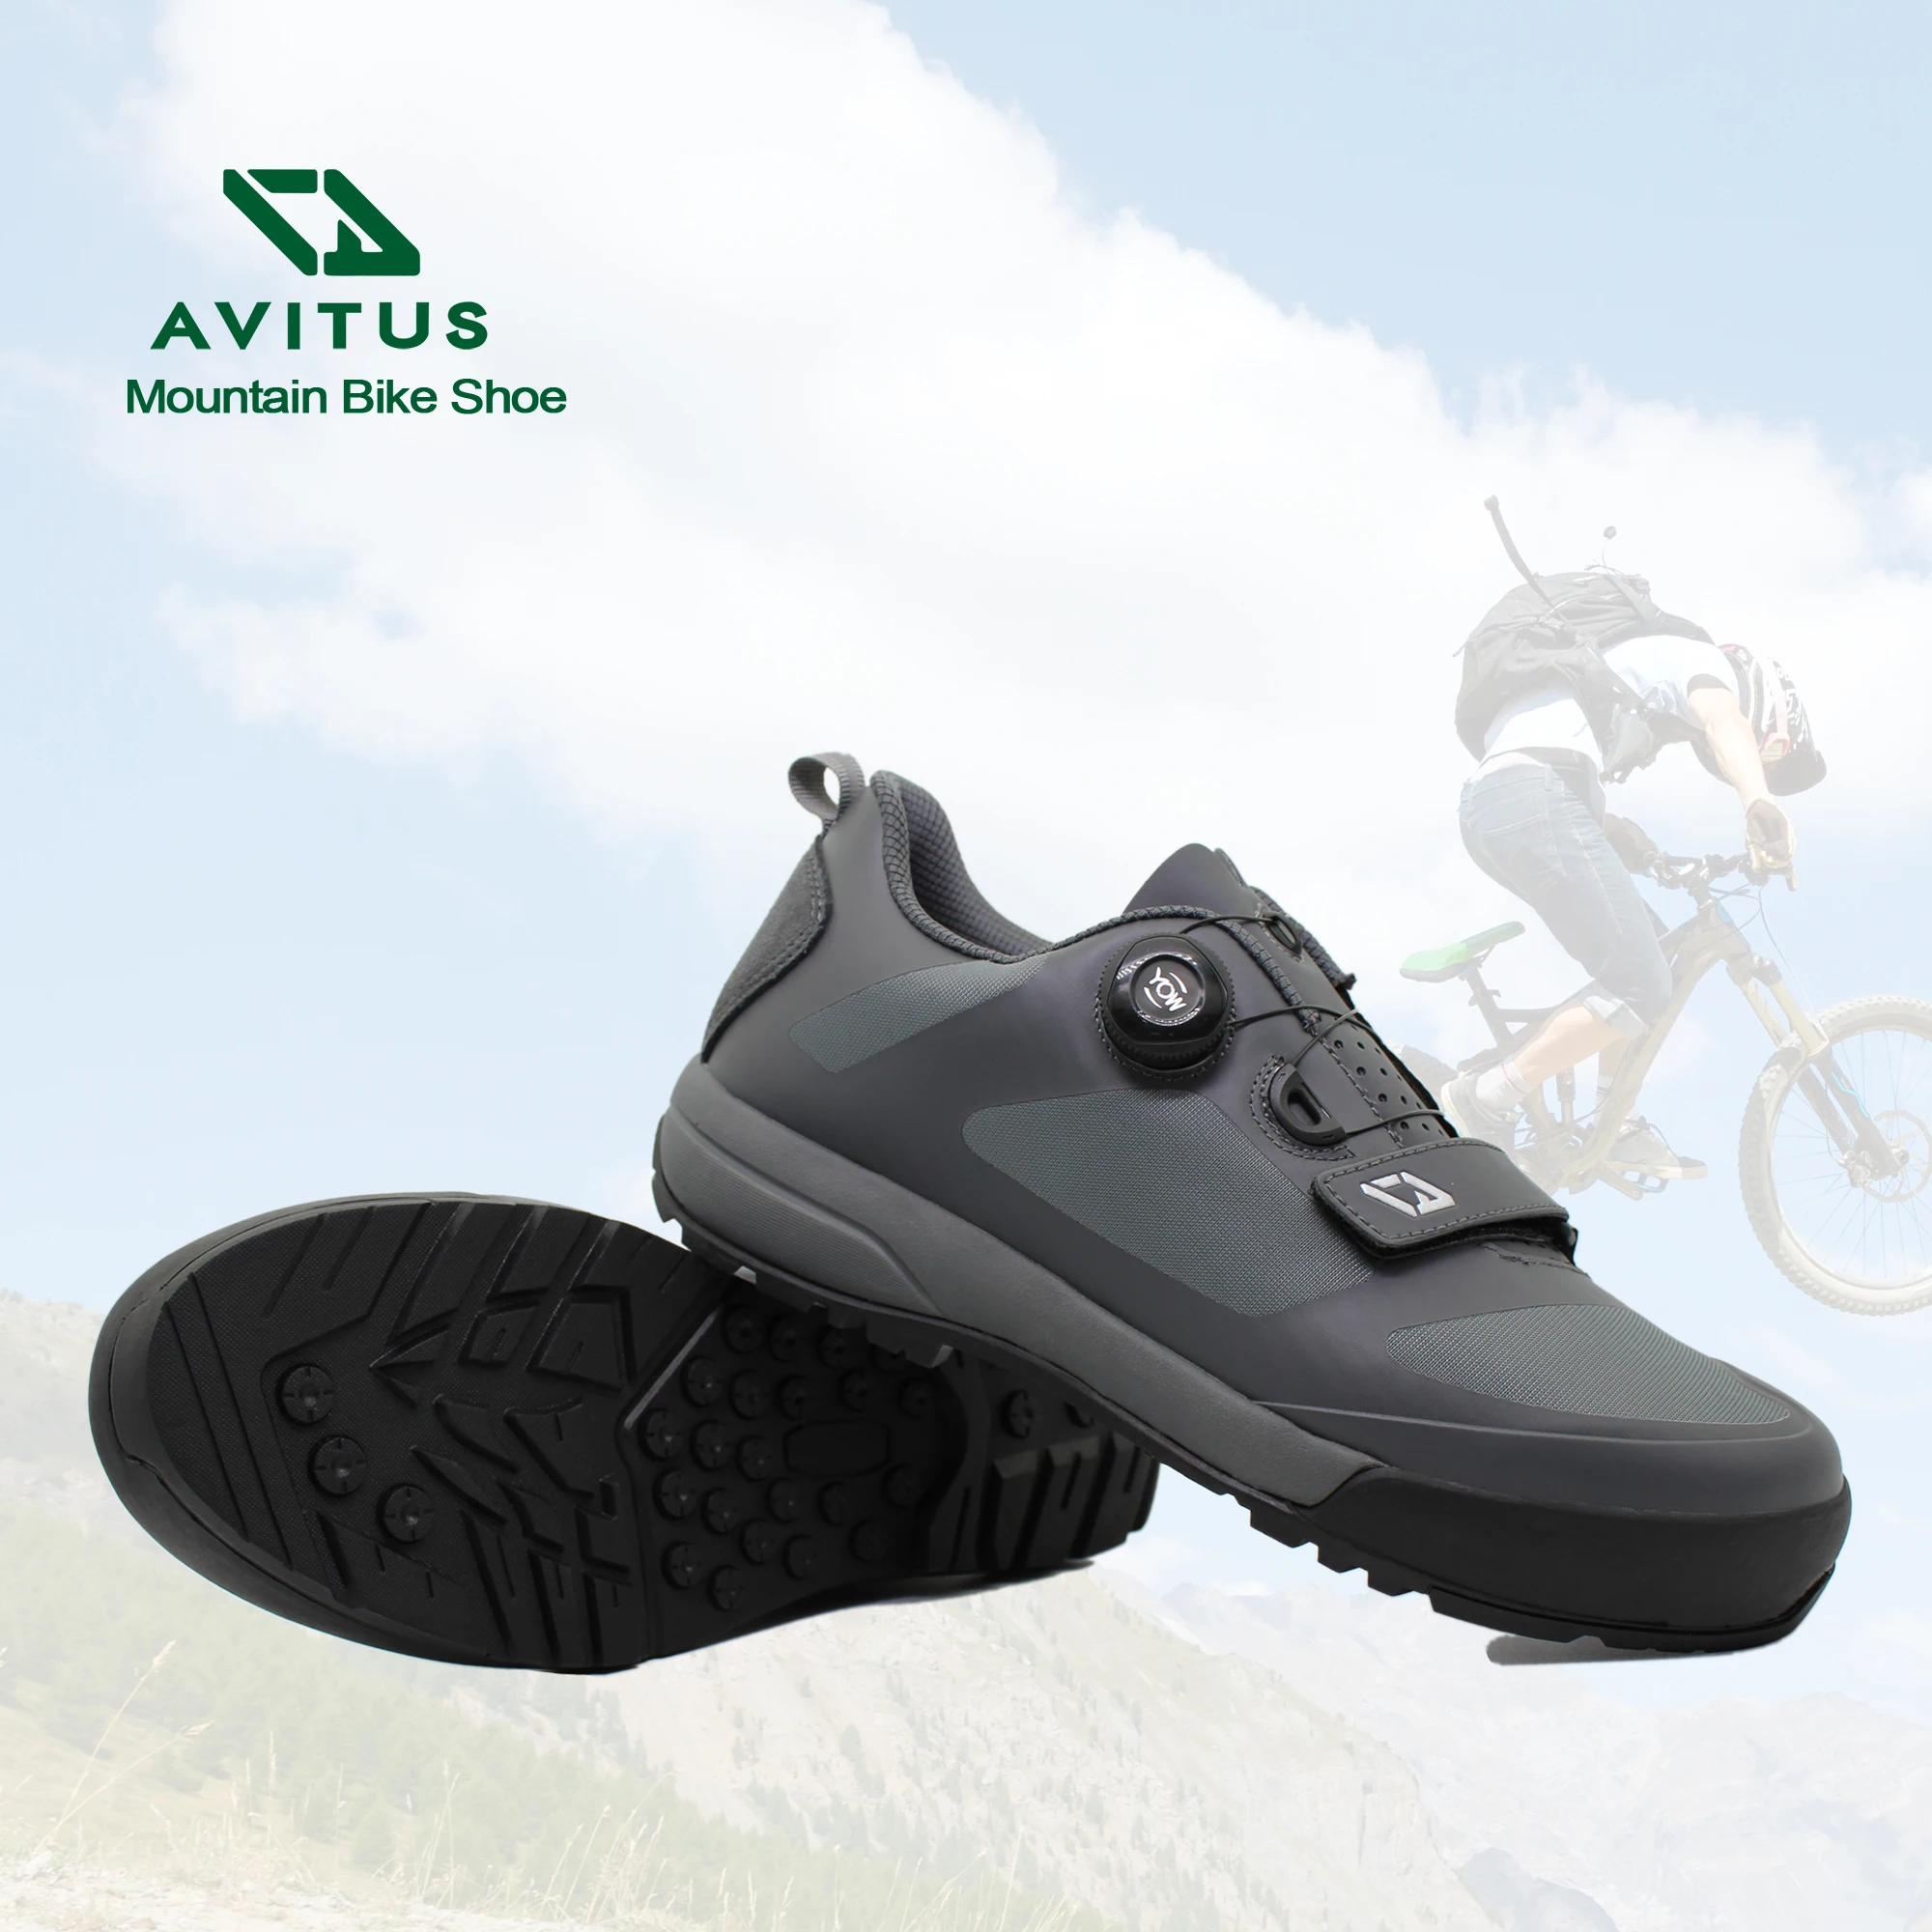 Avitus-zapatos Para Ciclismo De Montaña Para Principiantes,Calzado Fácil De Poner Y Apagar,Muy Cómodo - Buy Mtb Carretera,Al Aire Libre De Ciclismo,Mtb Zapatos Product Alibaba.com